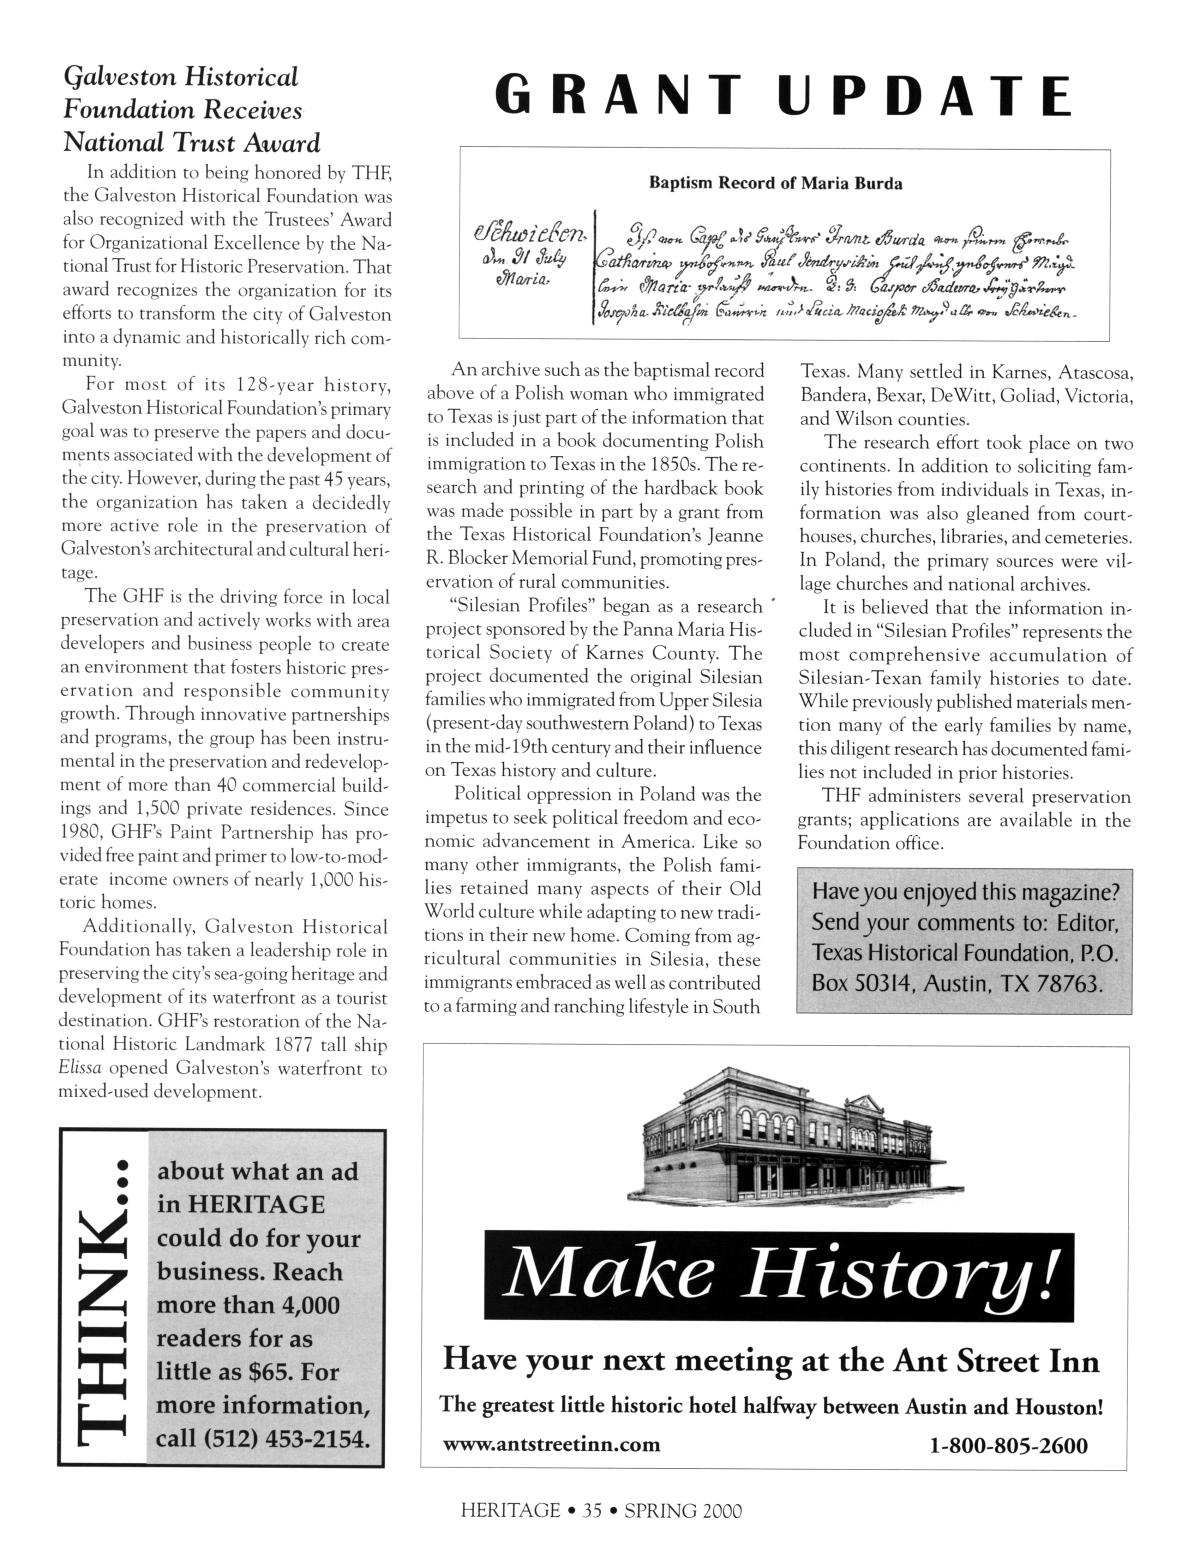 Heritage, Volume 18, Number 2, Spring 2000
                                                
                                                    35
                                                